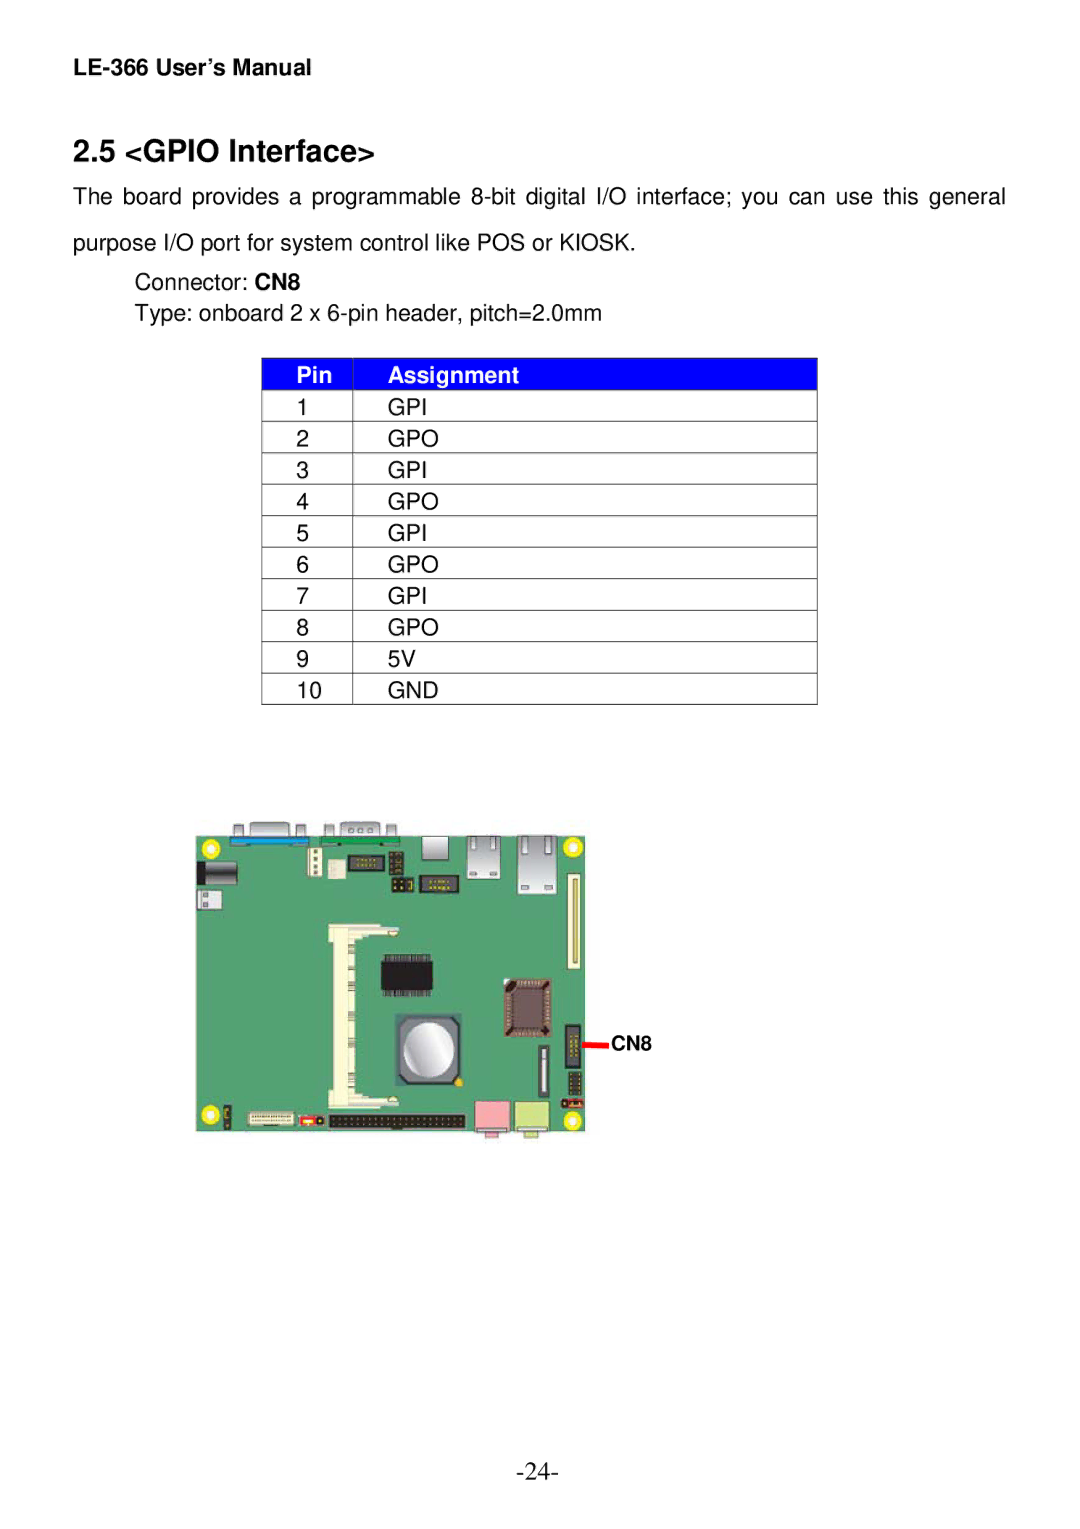 AMD LE-366 user manual Gpio Interface 